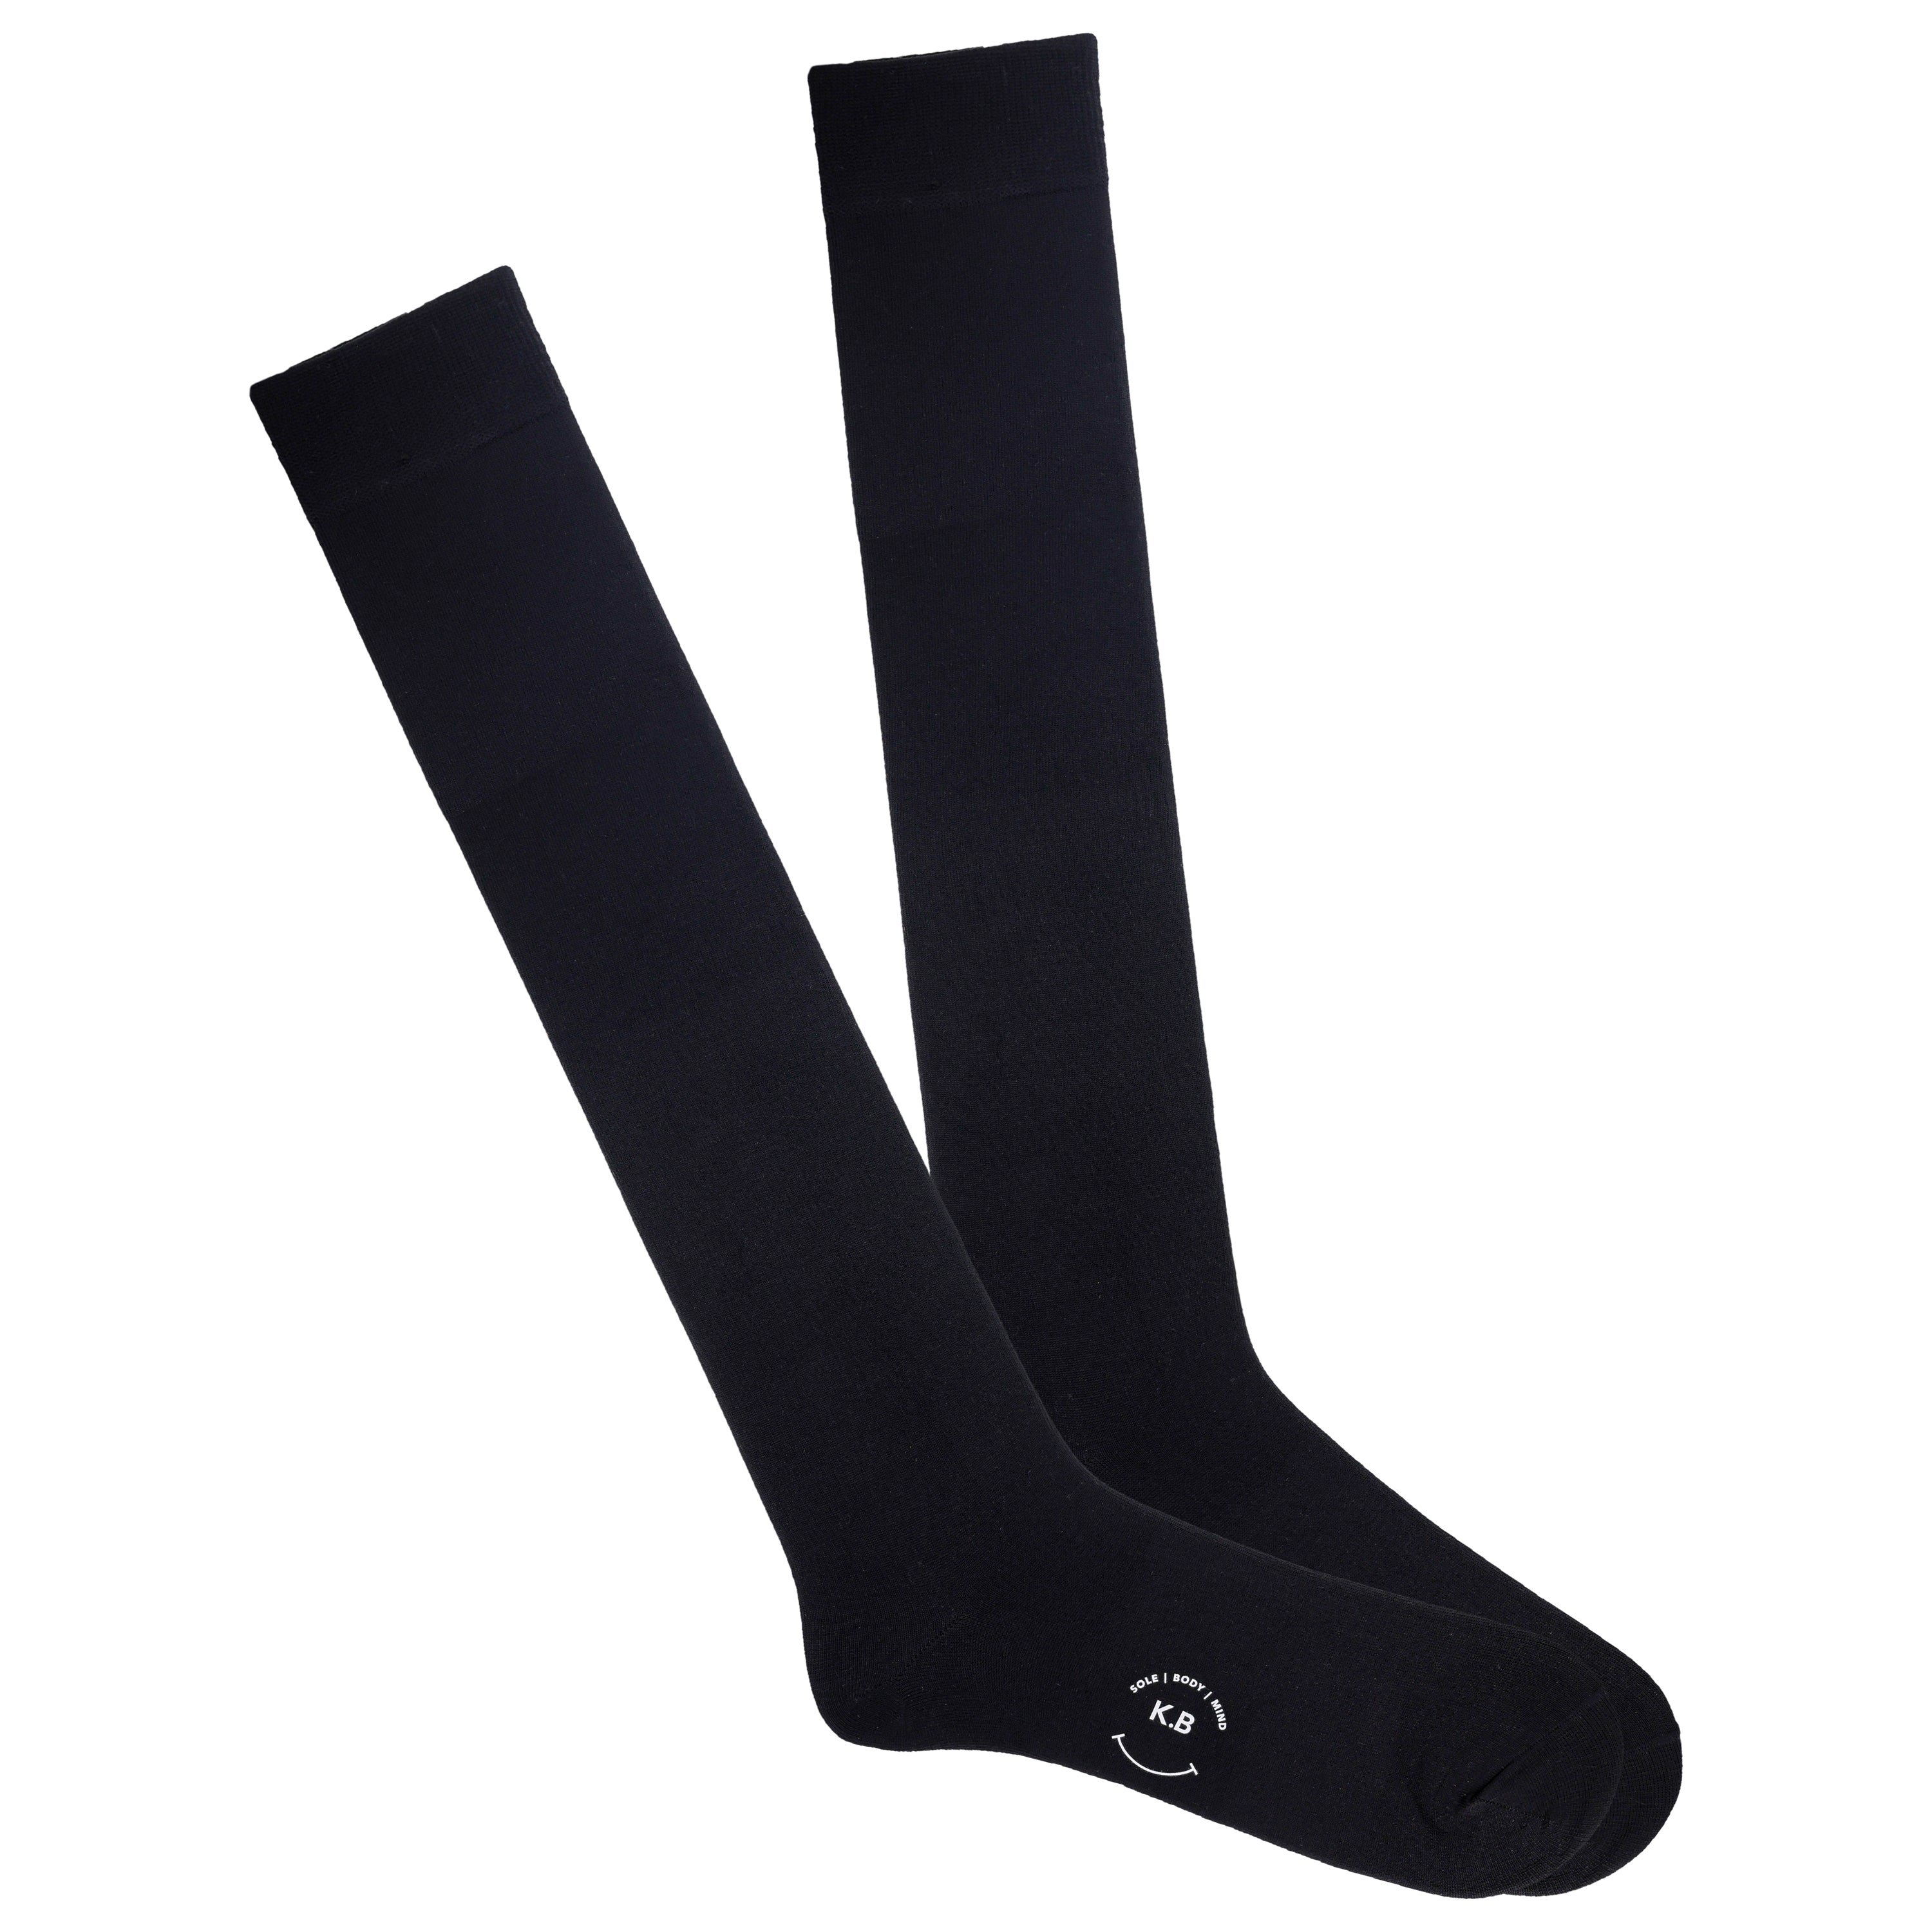 New Socks – K.Bell